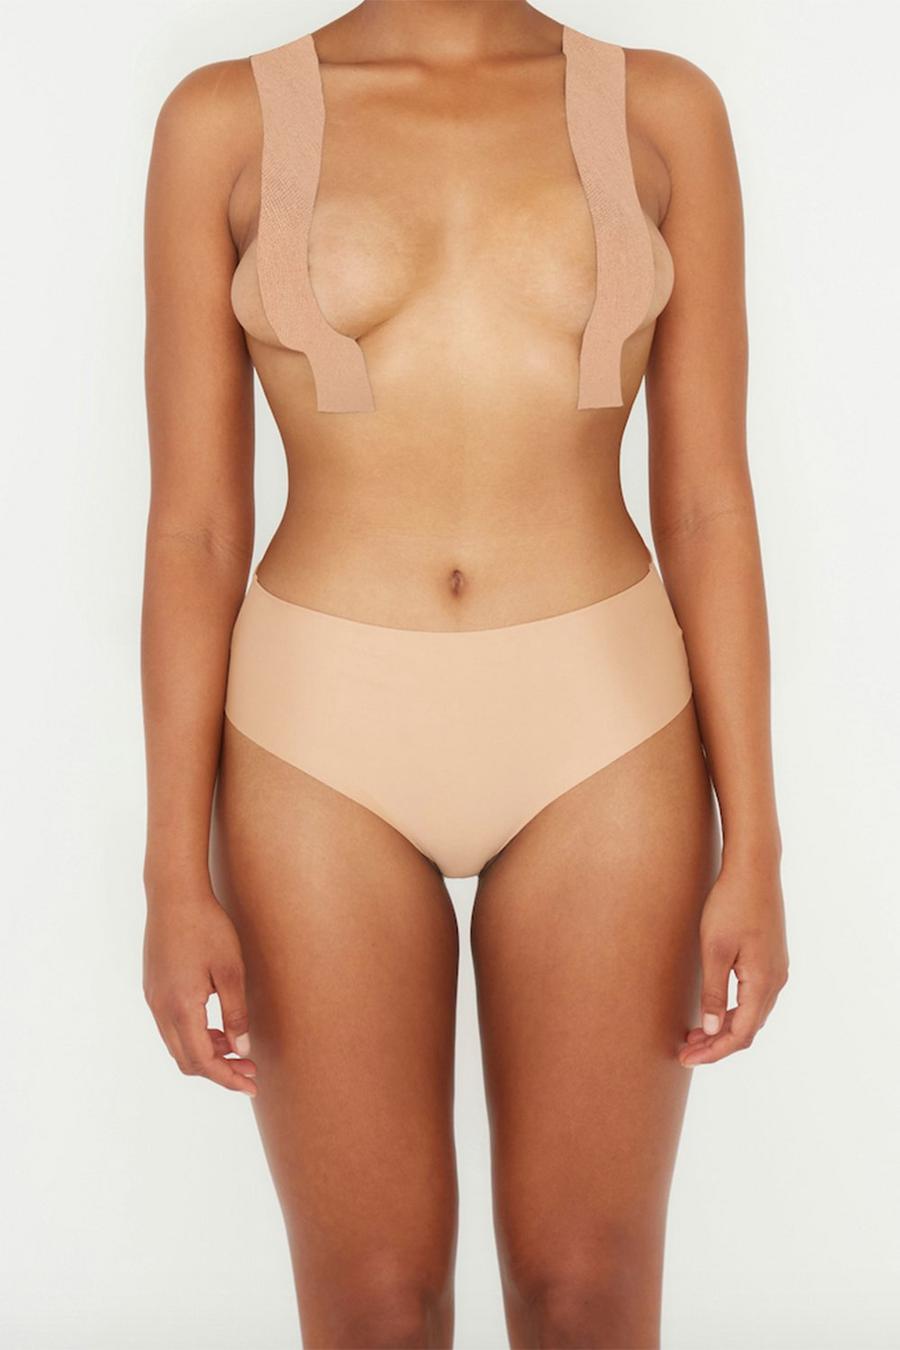 Nude Perky Pear DIY Breast Lift Tape